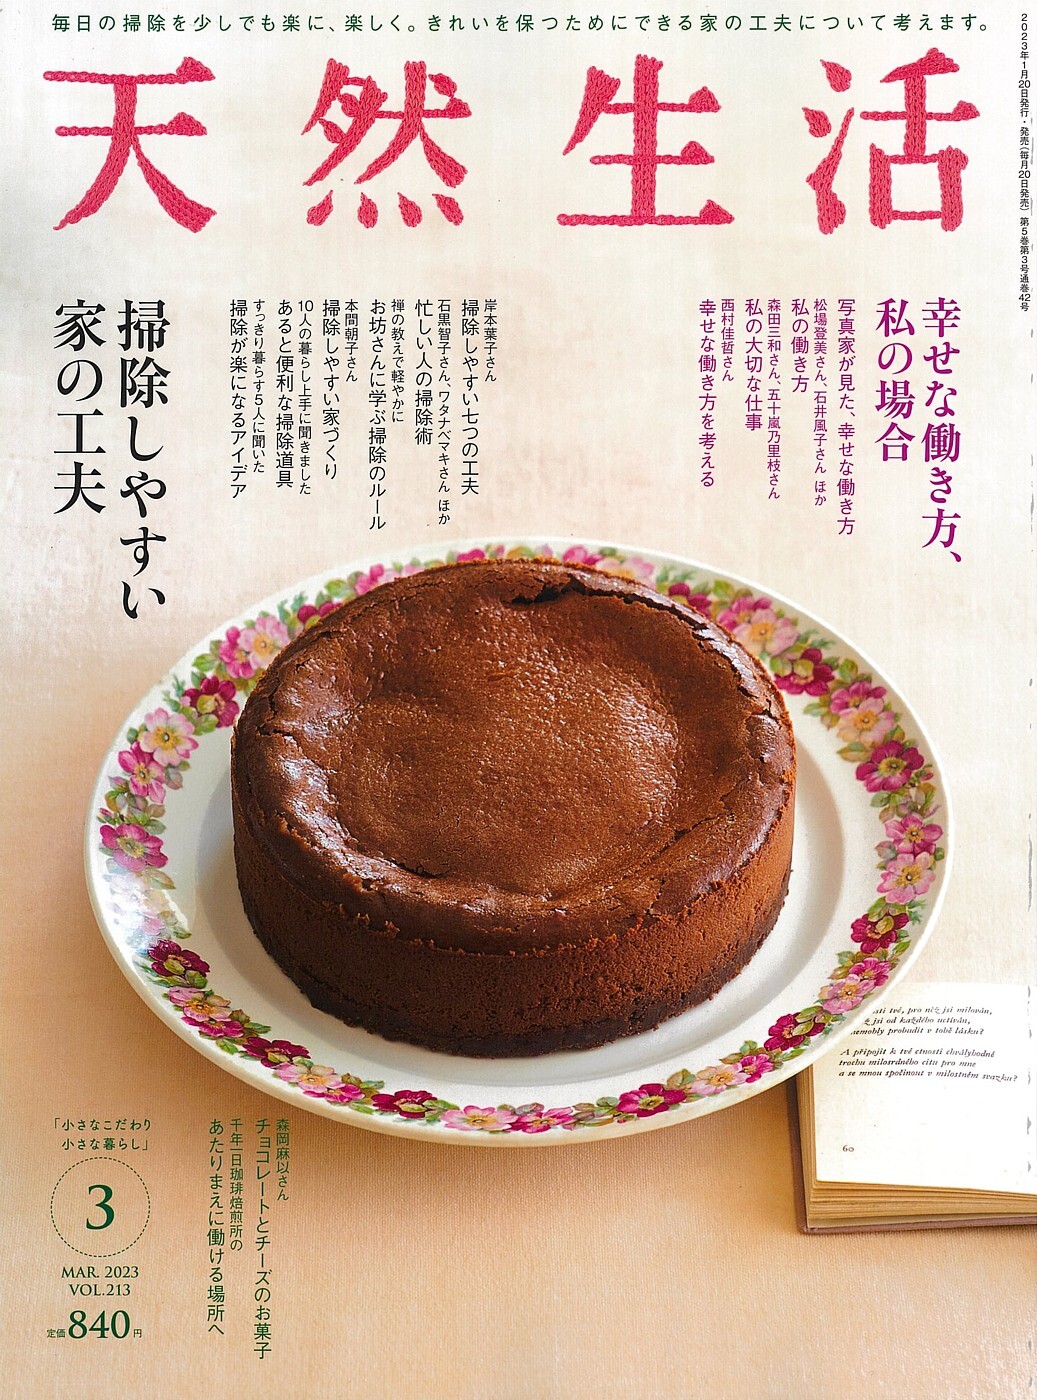 “あめんどろ純芋蜜 紫“が”天然生活３月号“に掲載されました。